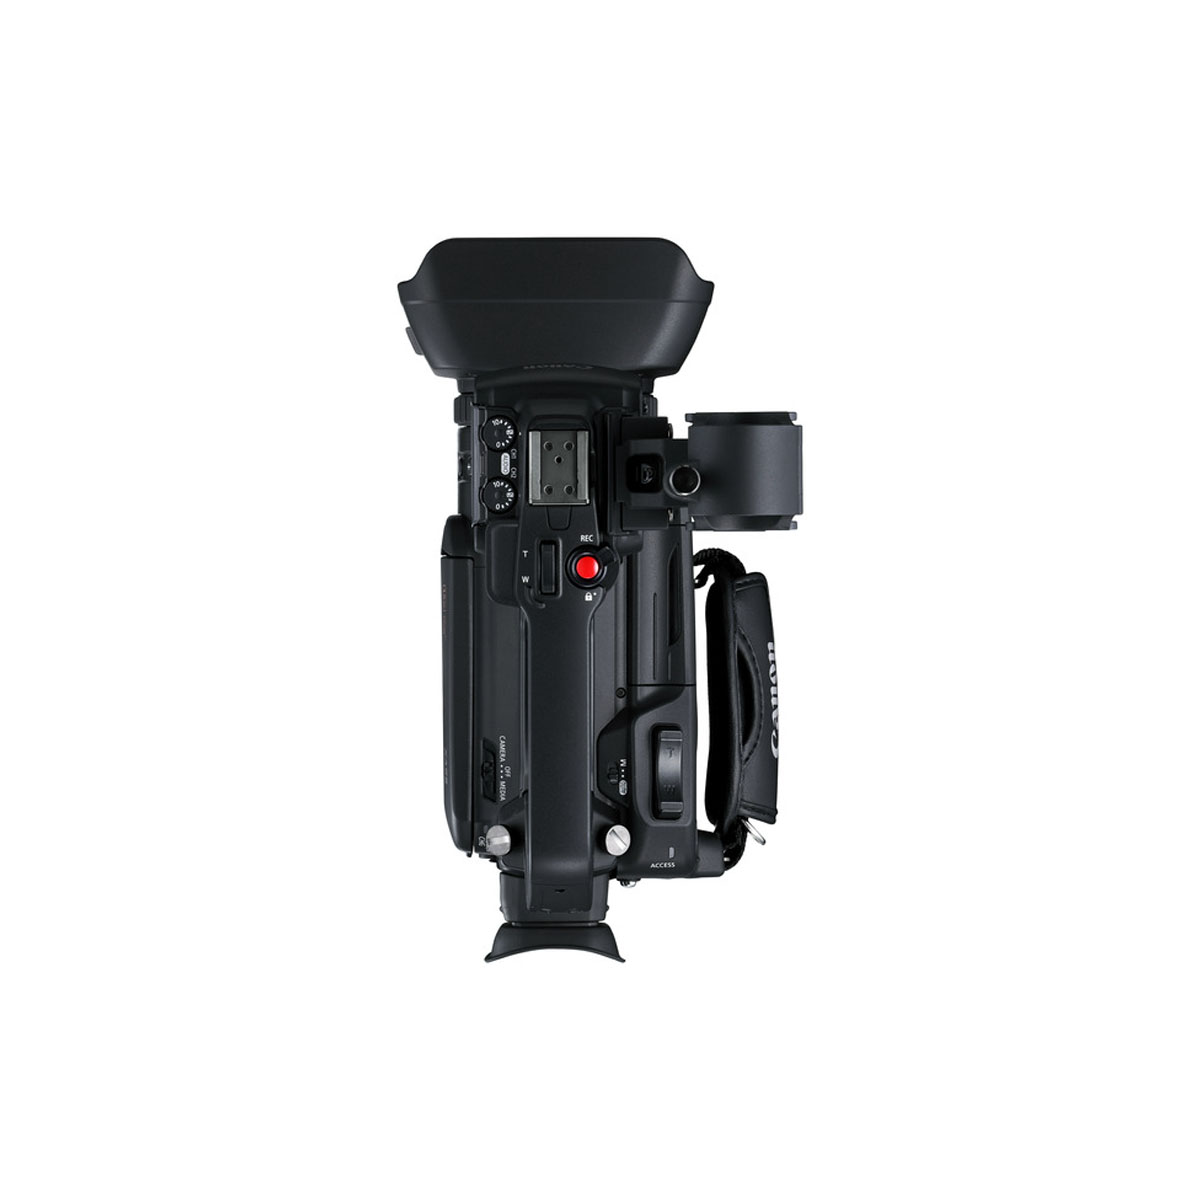 Canon XA55 Camcorder